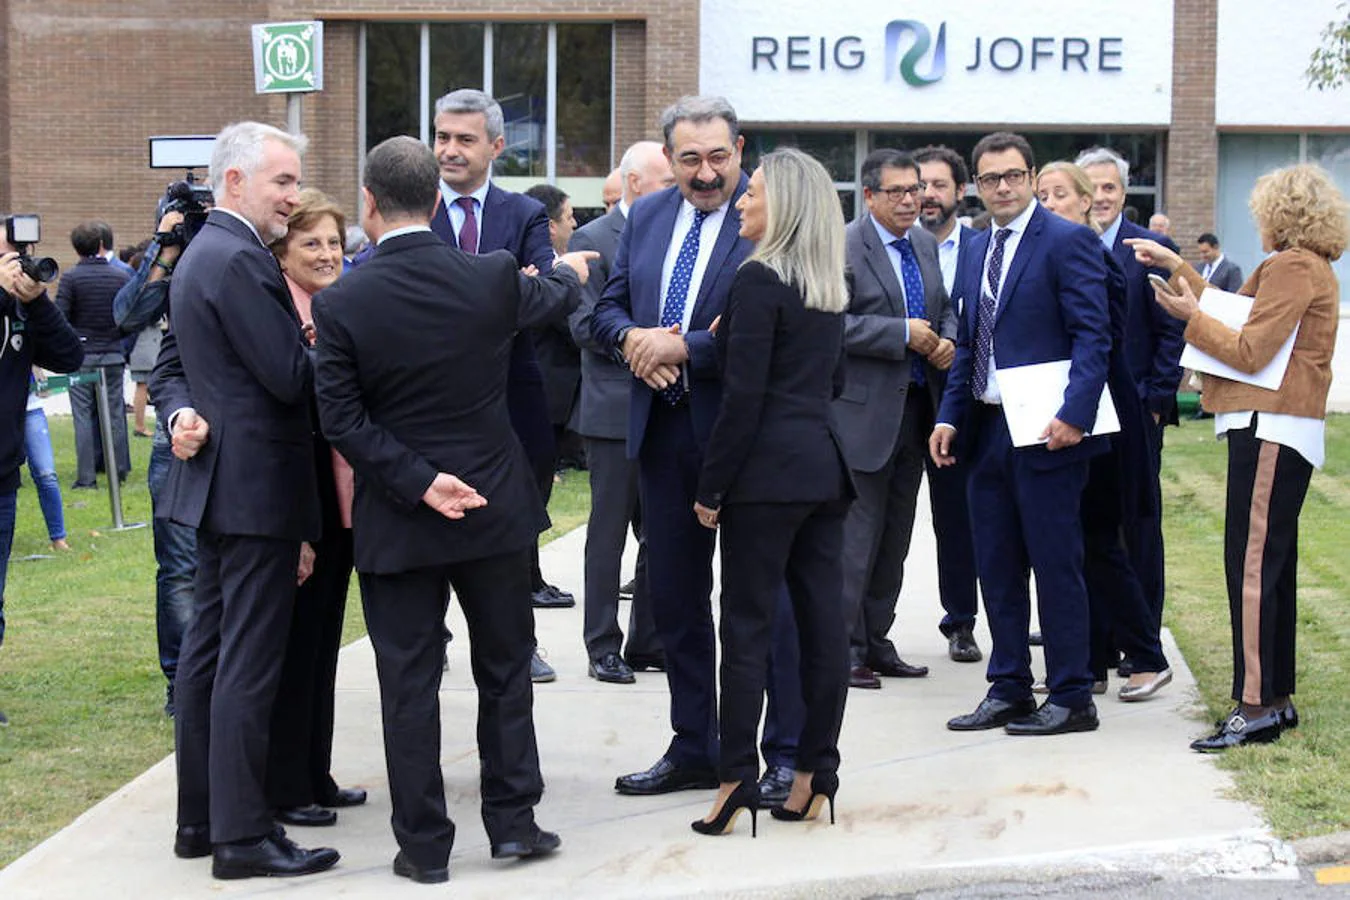 Pedro Sánchez inaugura la ampliación de Reig Jofre en Toledo